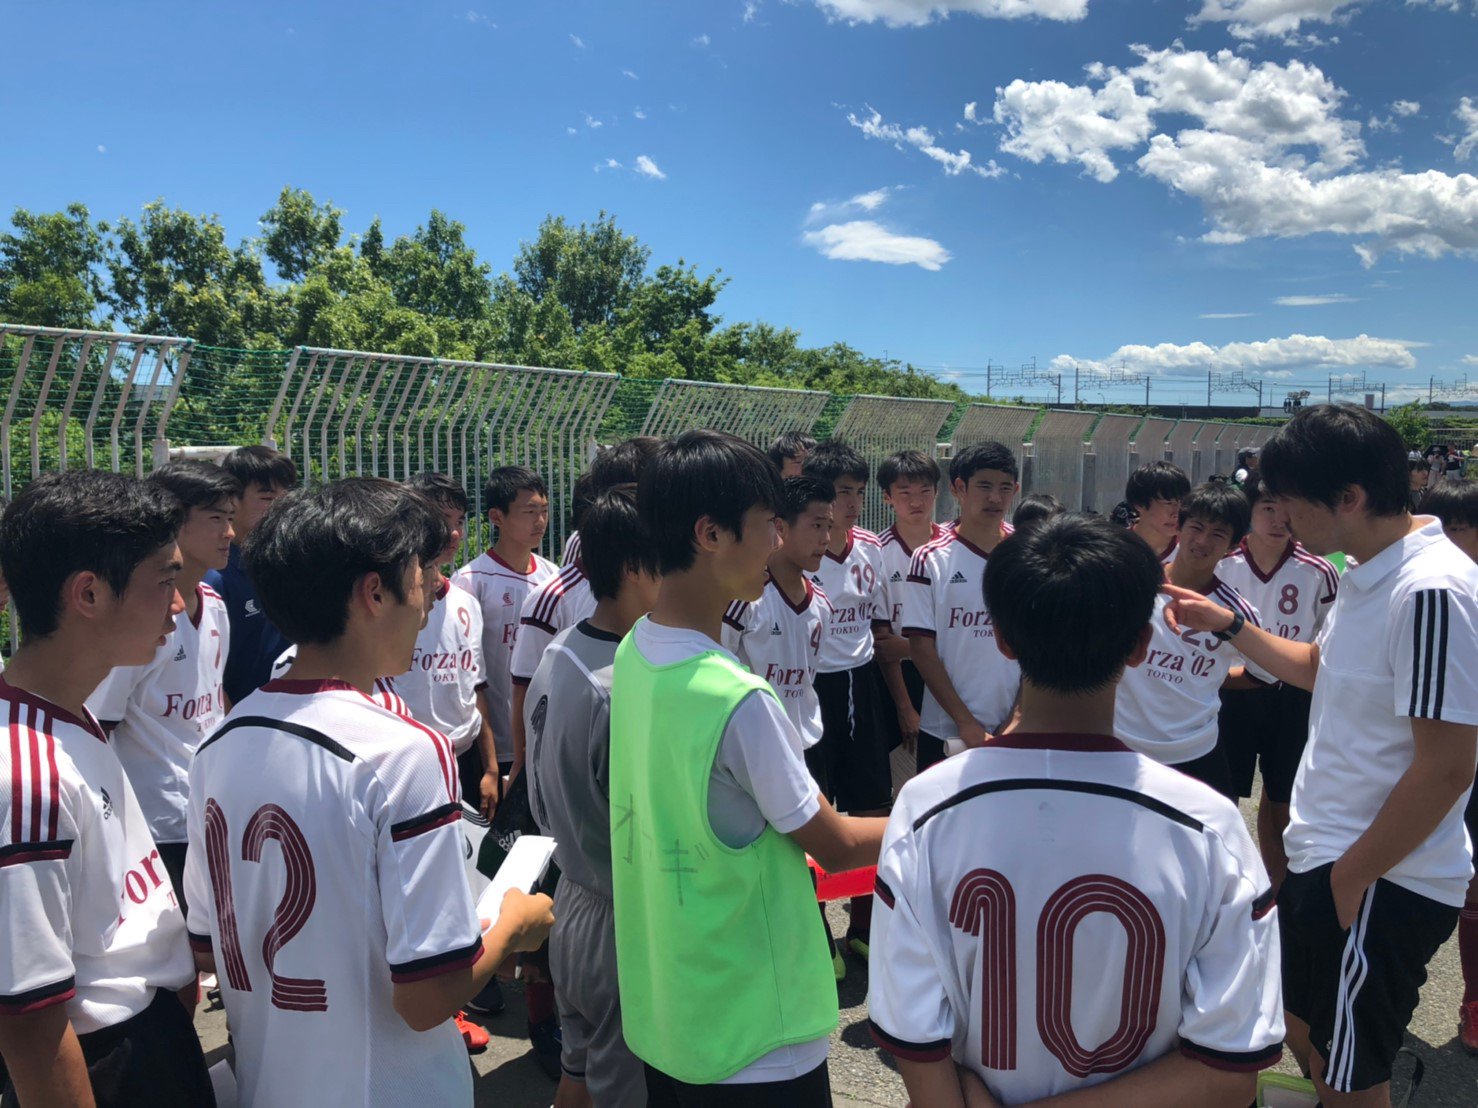 中学生もここまで書ける 全国出場forza 02 東京 大会レポートを通じてメタ認知能力を高める取り組み ジュニアサッカーnews